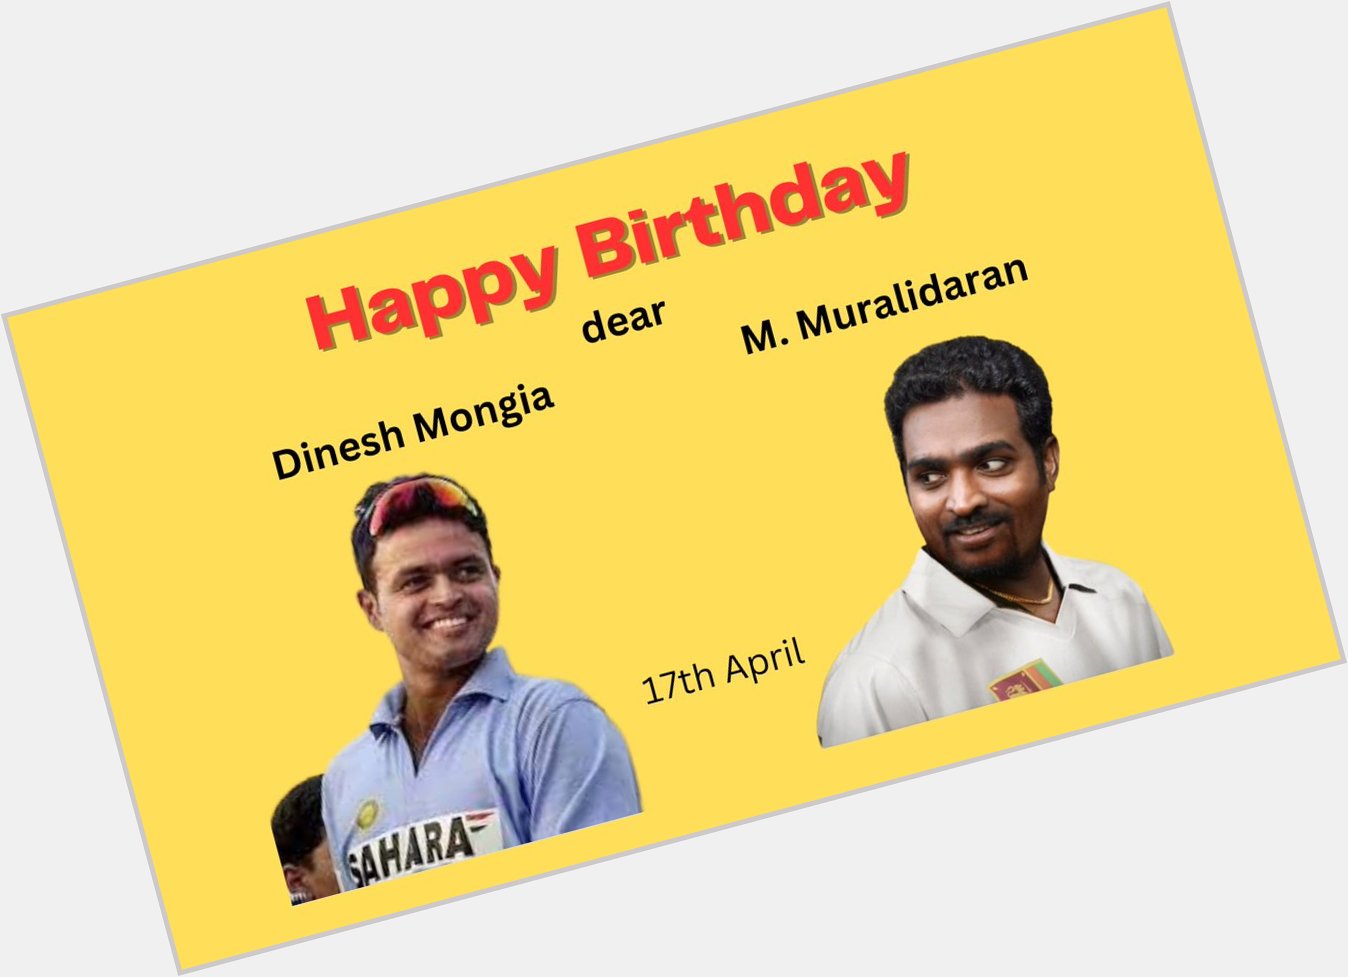 Wishing Dinesh Mongia and Murali Happy Birthday.  